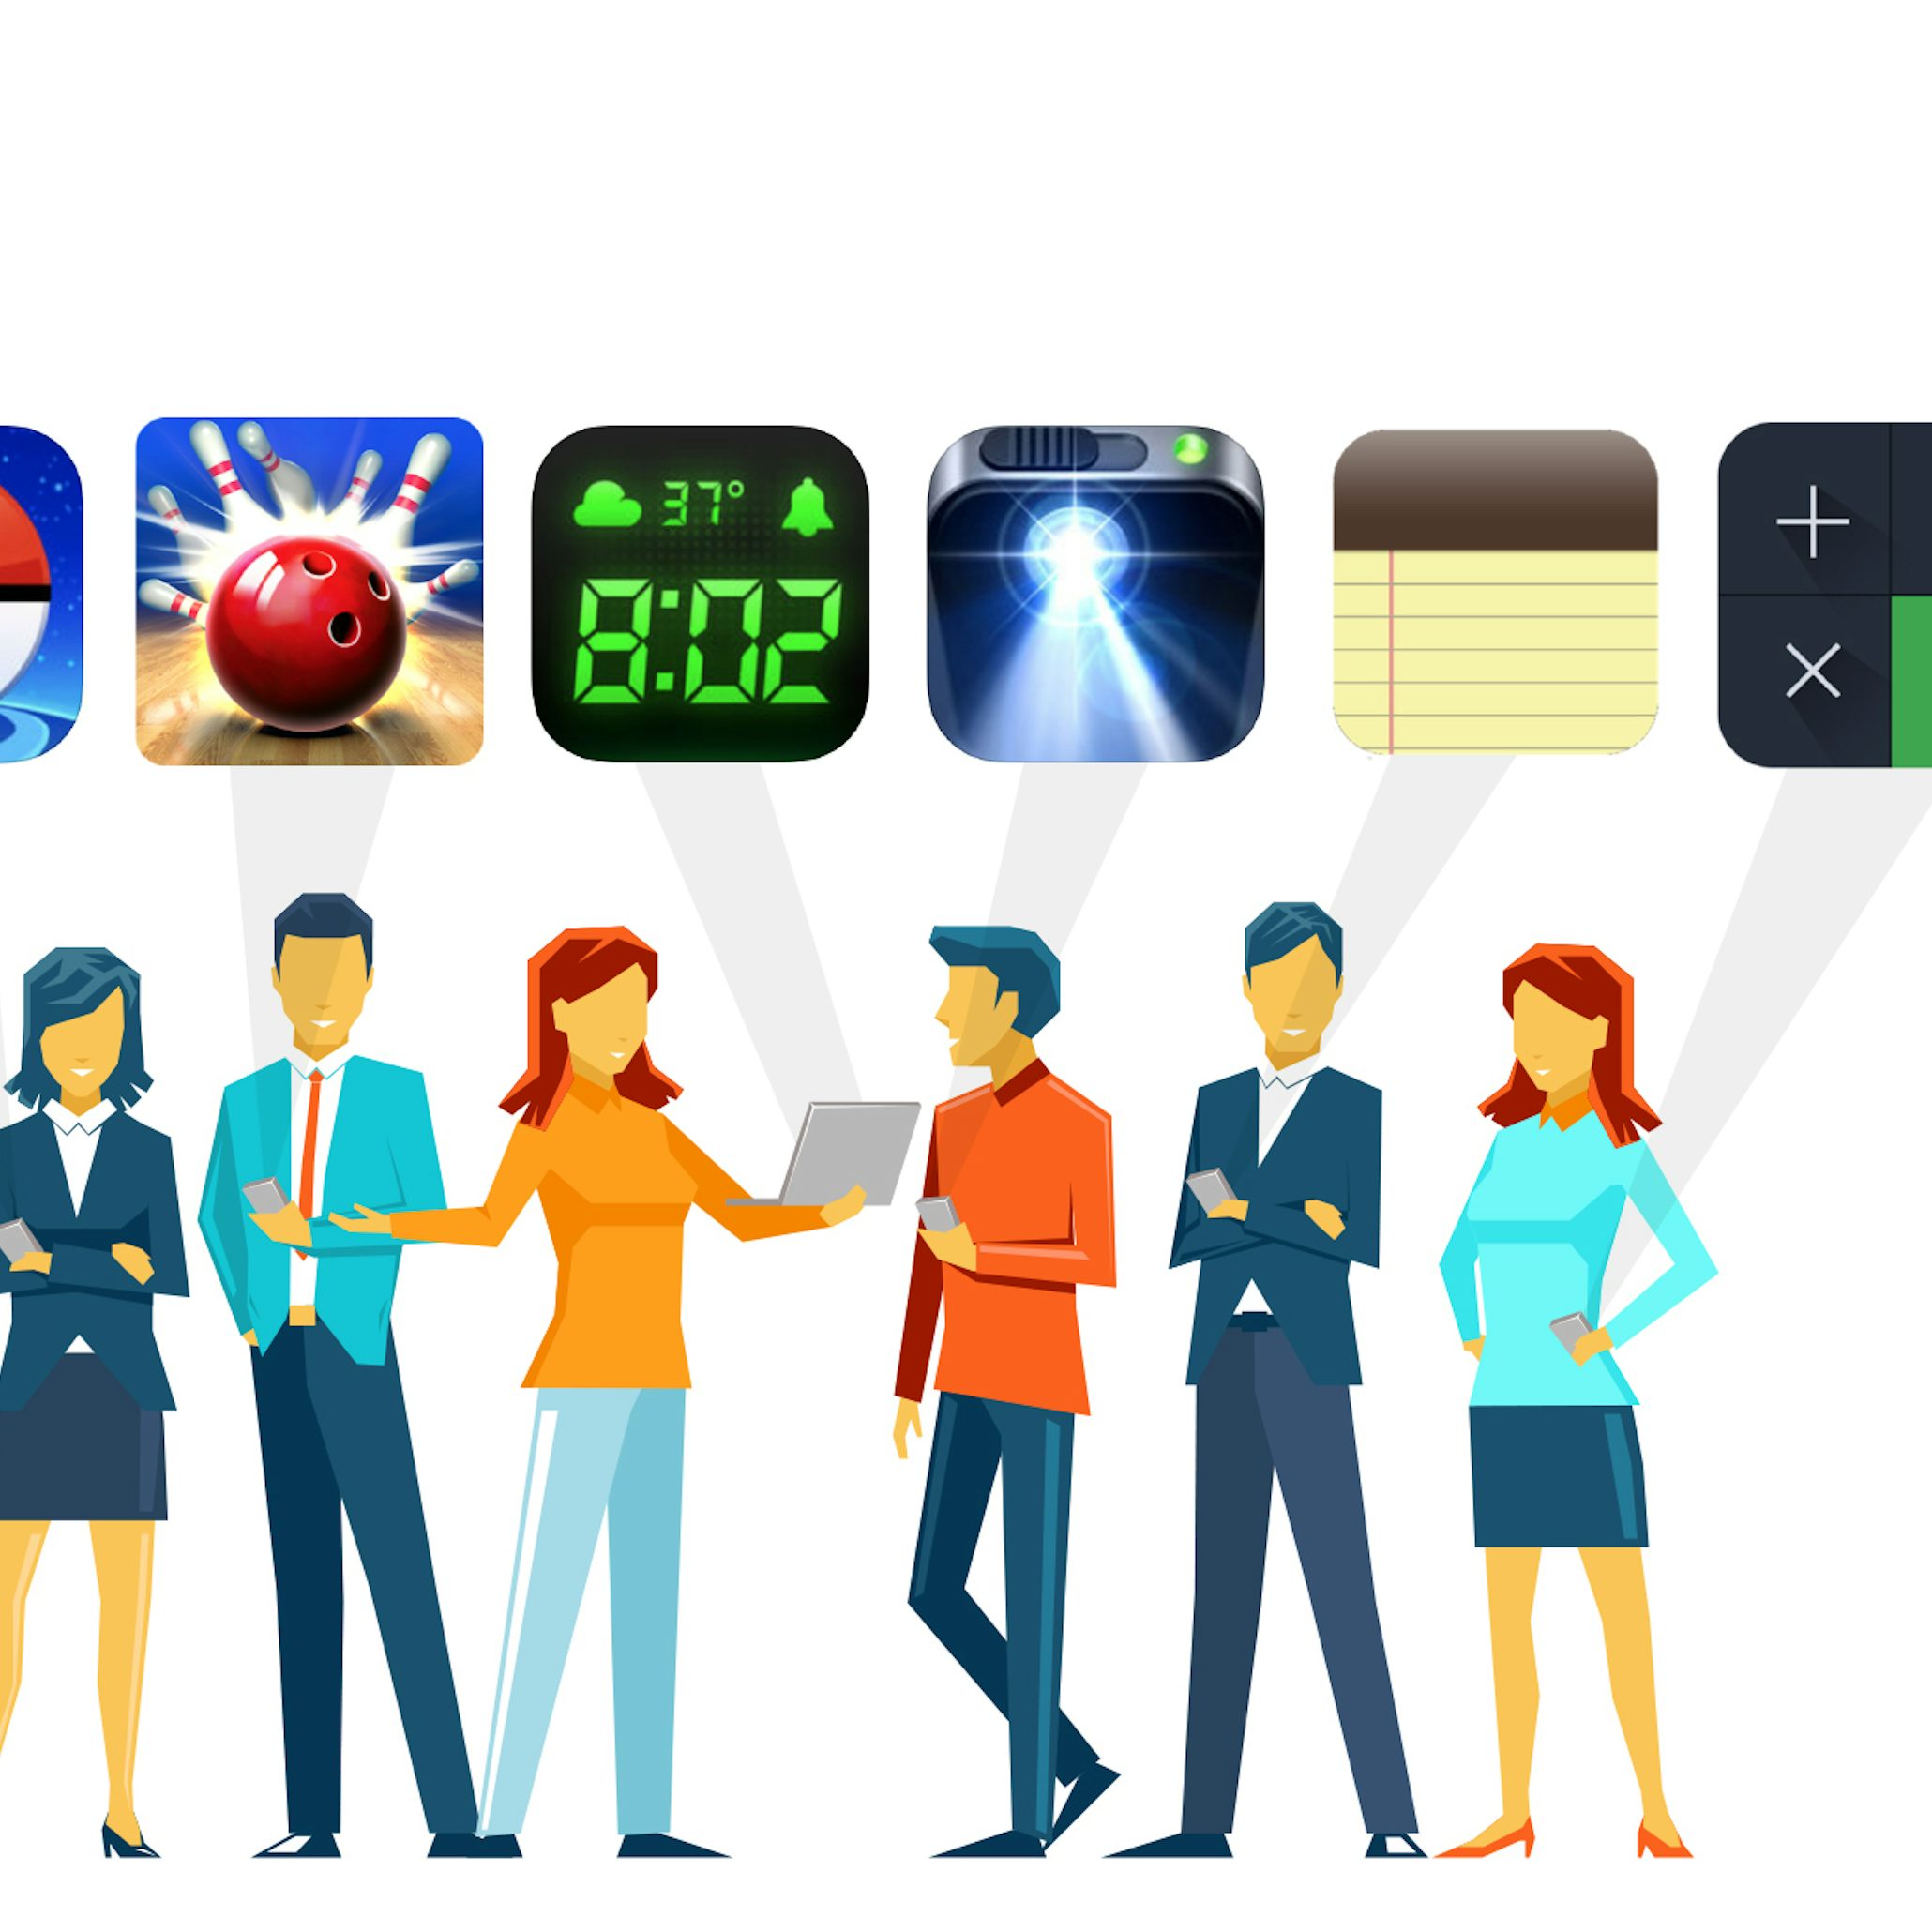 Wie Man Ein App Icon Designt Der Ultimative Guide 99designs